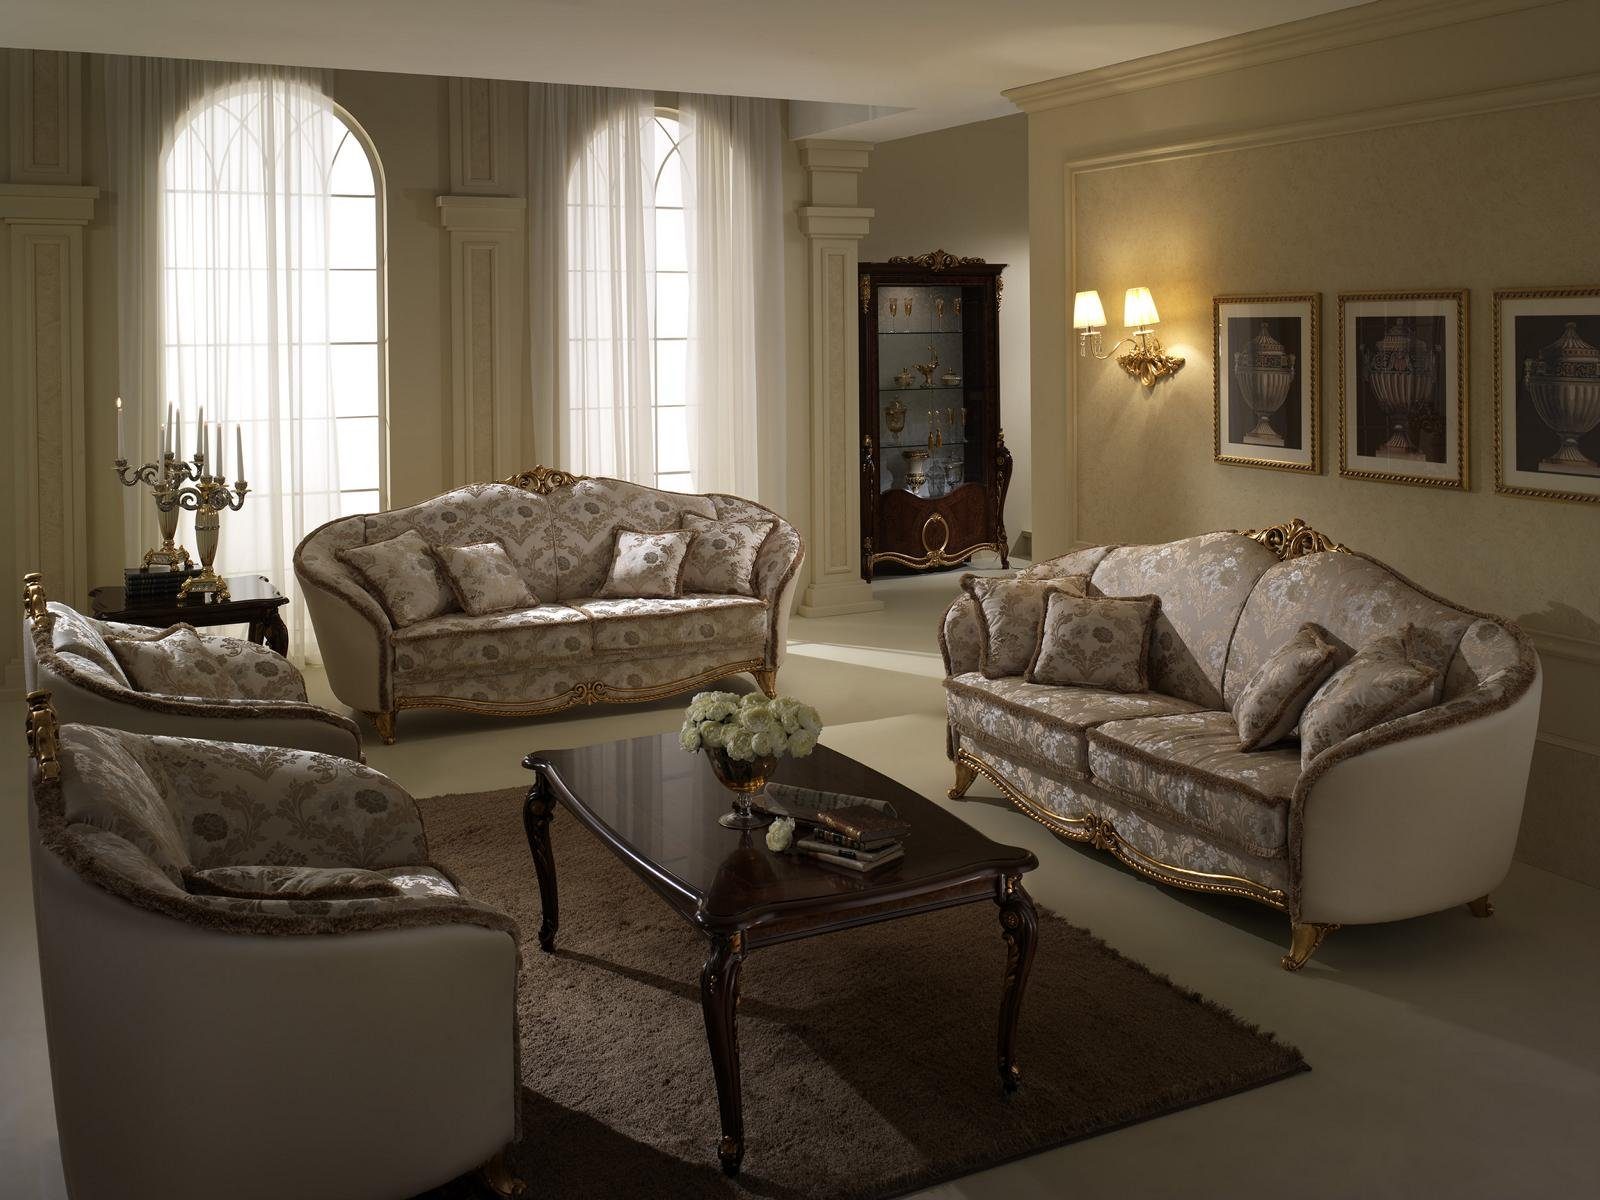 Wohnzimmer-Set, JVmoebel Neu Luxus Klasse Couch Italienische 3+2+1 Sofagarnitur Sofa arredoclassic™ Möbel